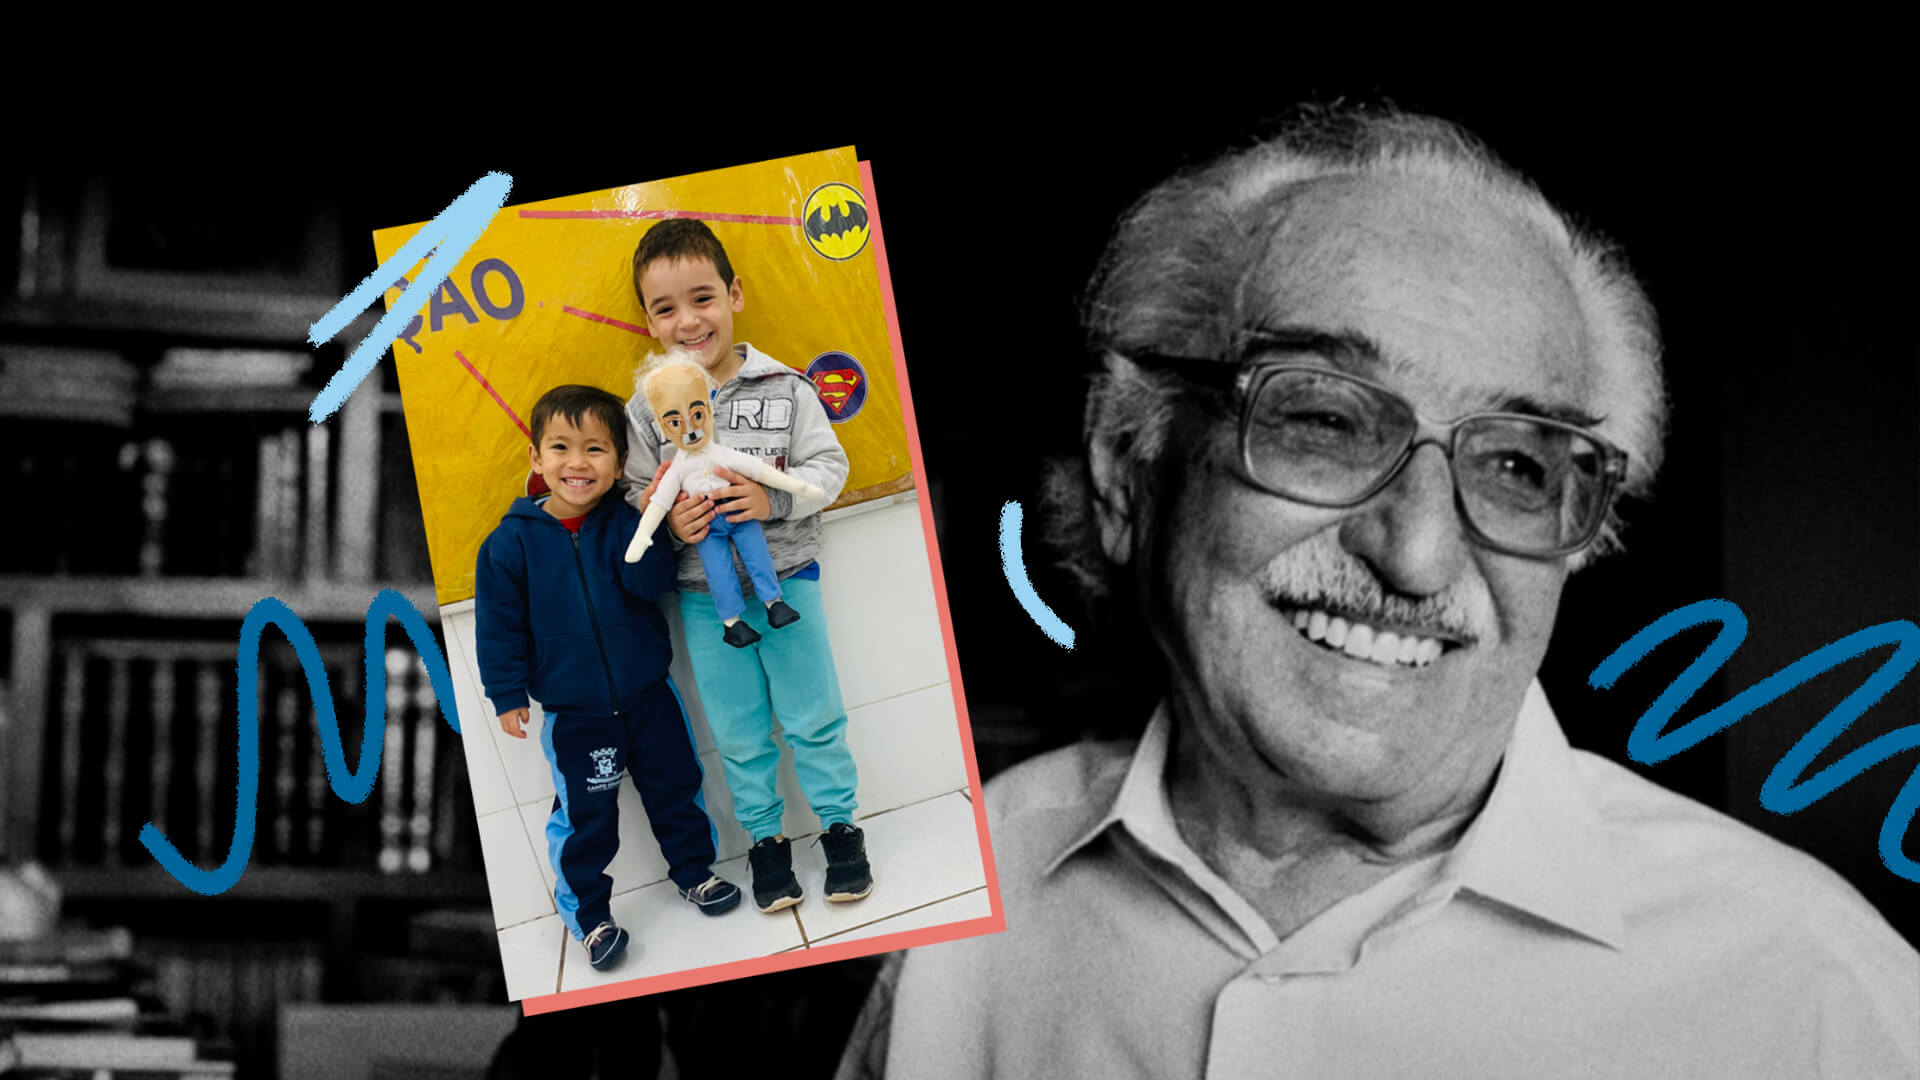 Foto em preto e branco do poeta Manoel de Barros, um homem branco de óculos e camisa social. À frente, uma foto colorida de dois meninos segurando um boneco que representa o autor